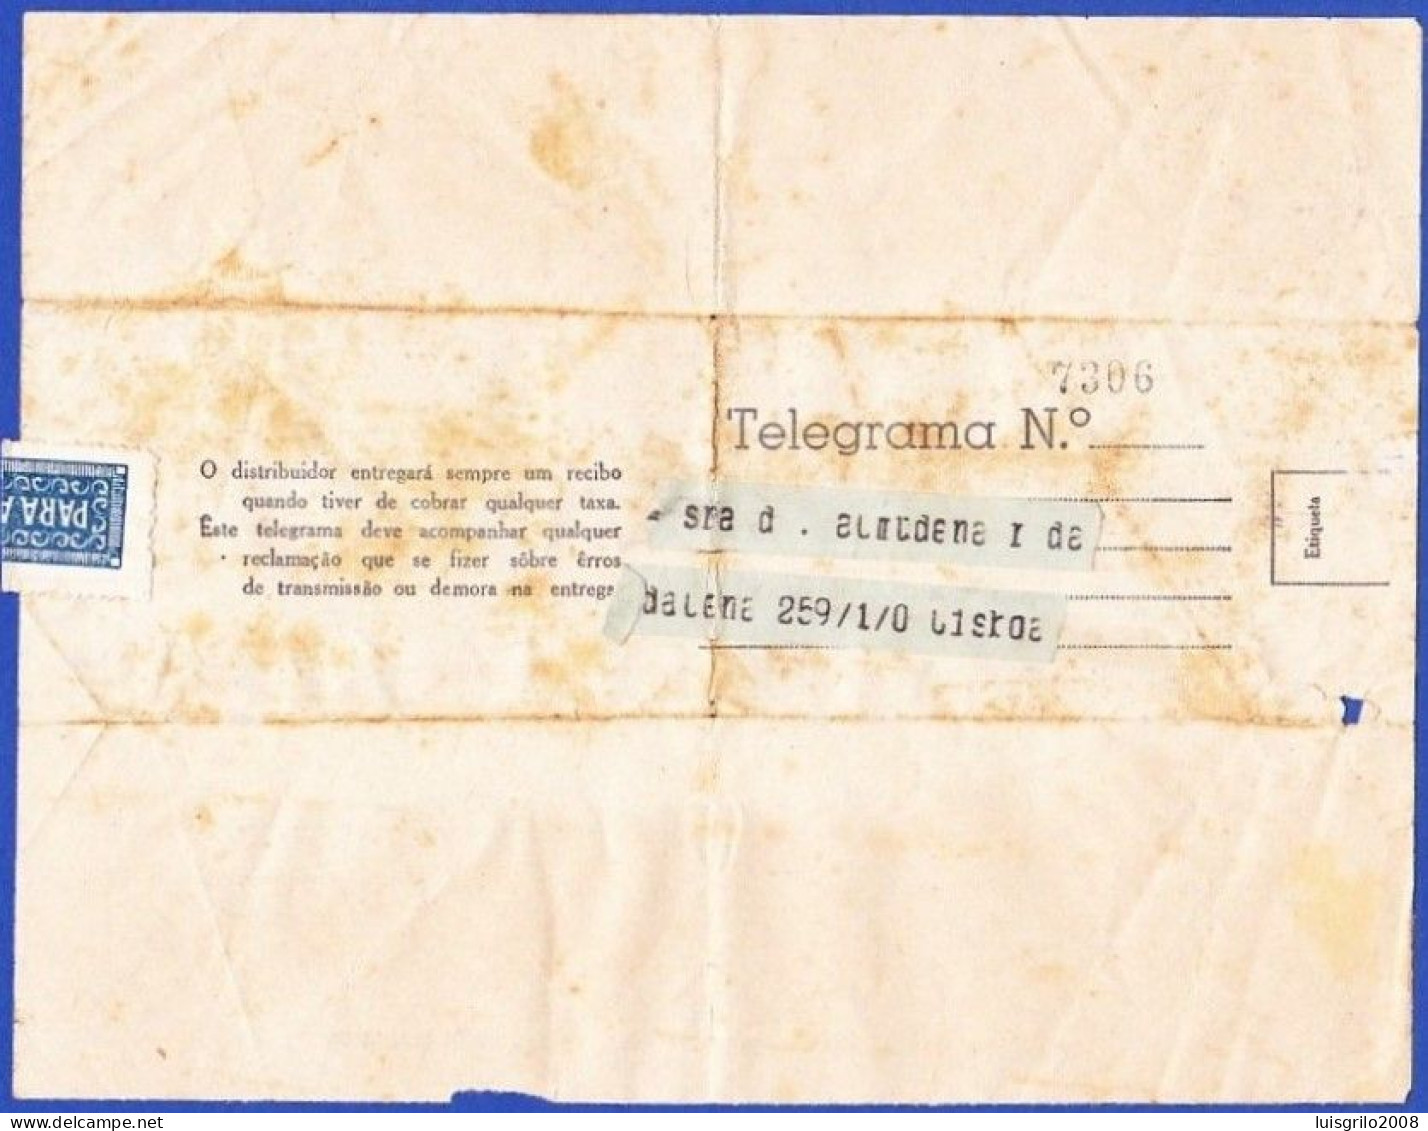 Telegram/ Telegrama - Postmark ESTAÇÃO CENTRAL TELEGRÁFICA De LISBOA . 1948 -|- Restauradores, Lisboa > Lisboa - Briefe U. Dokumente